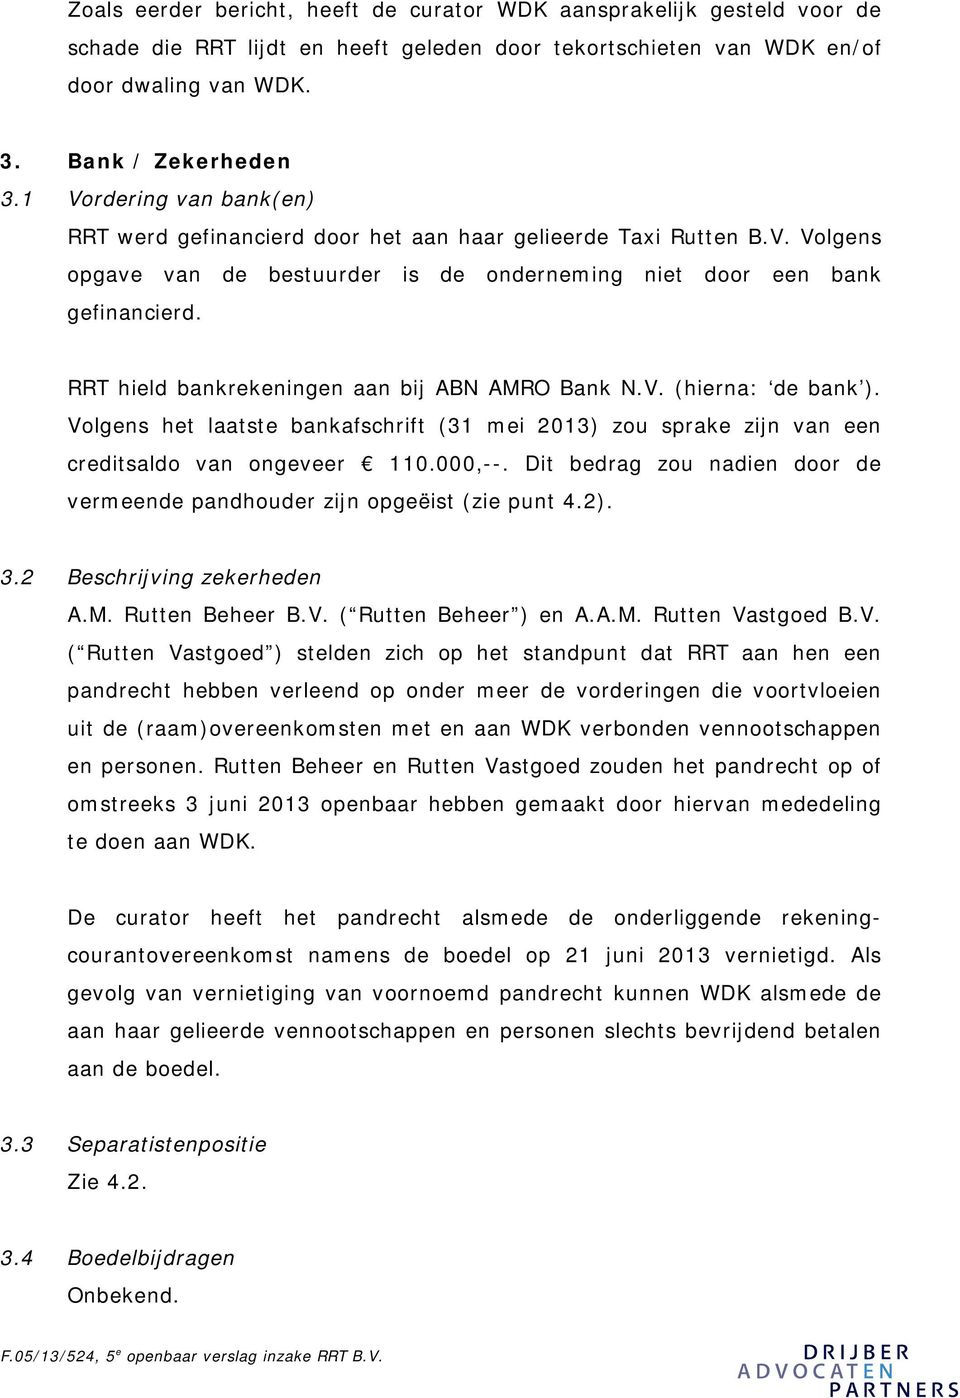 RRT hield bankrekeningen aan bij ABN AMRO Bank N.V. (hierna: de bank ). Volgens het laatste bankafschrift (31 mei 2013) zou sprake zijn van een creditsaldo van ongeveer 110.000,--.